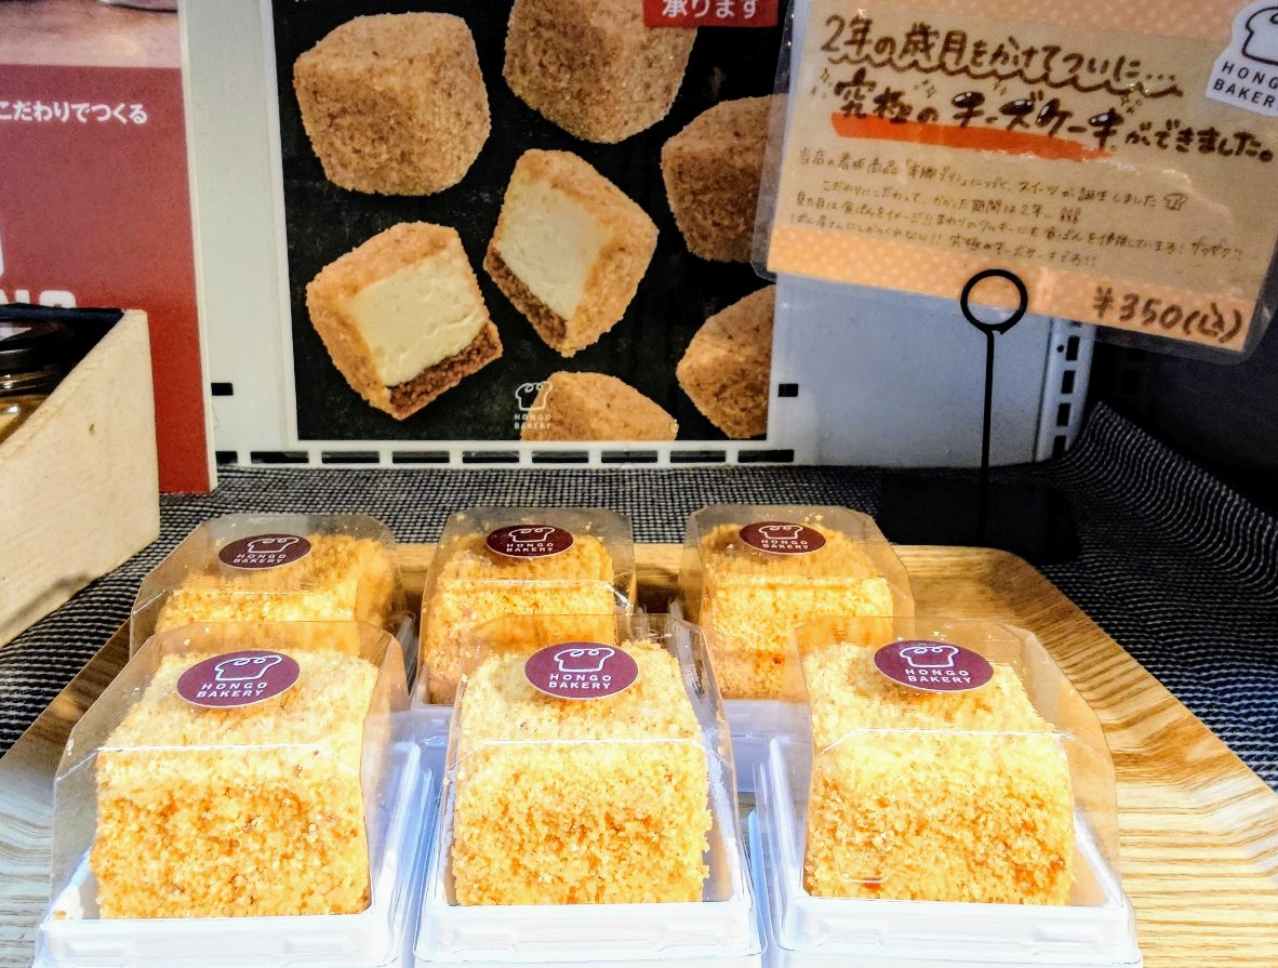 東京都文京区・「本郷ベーカリー本店」、「究極のチーズケーキ」